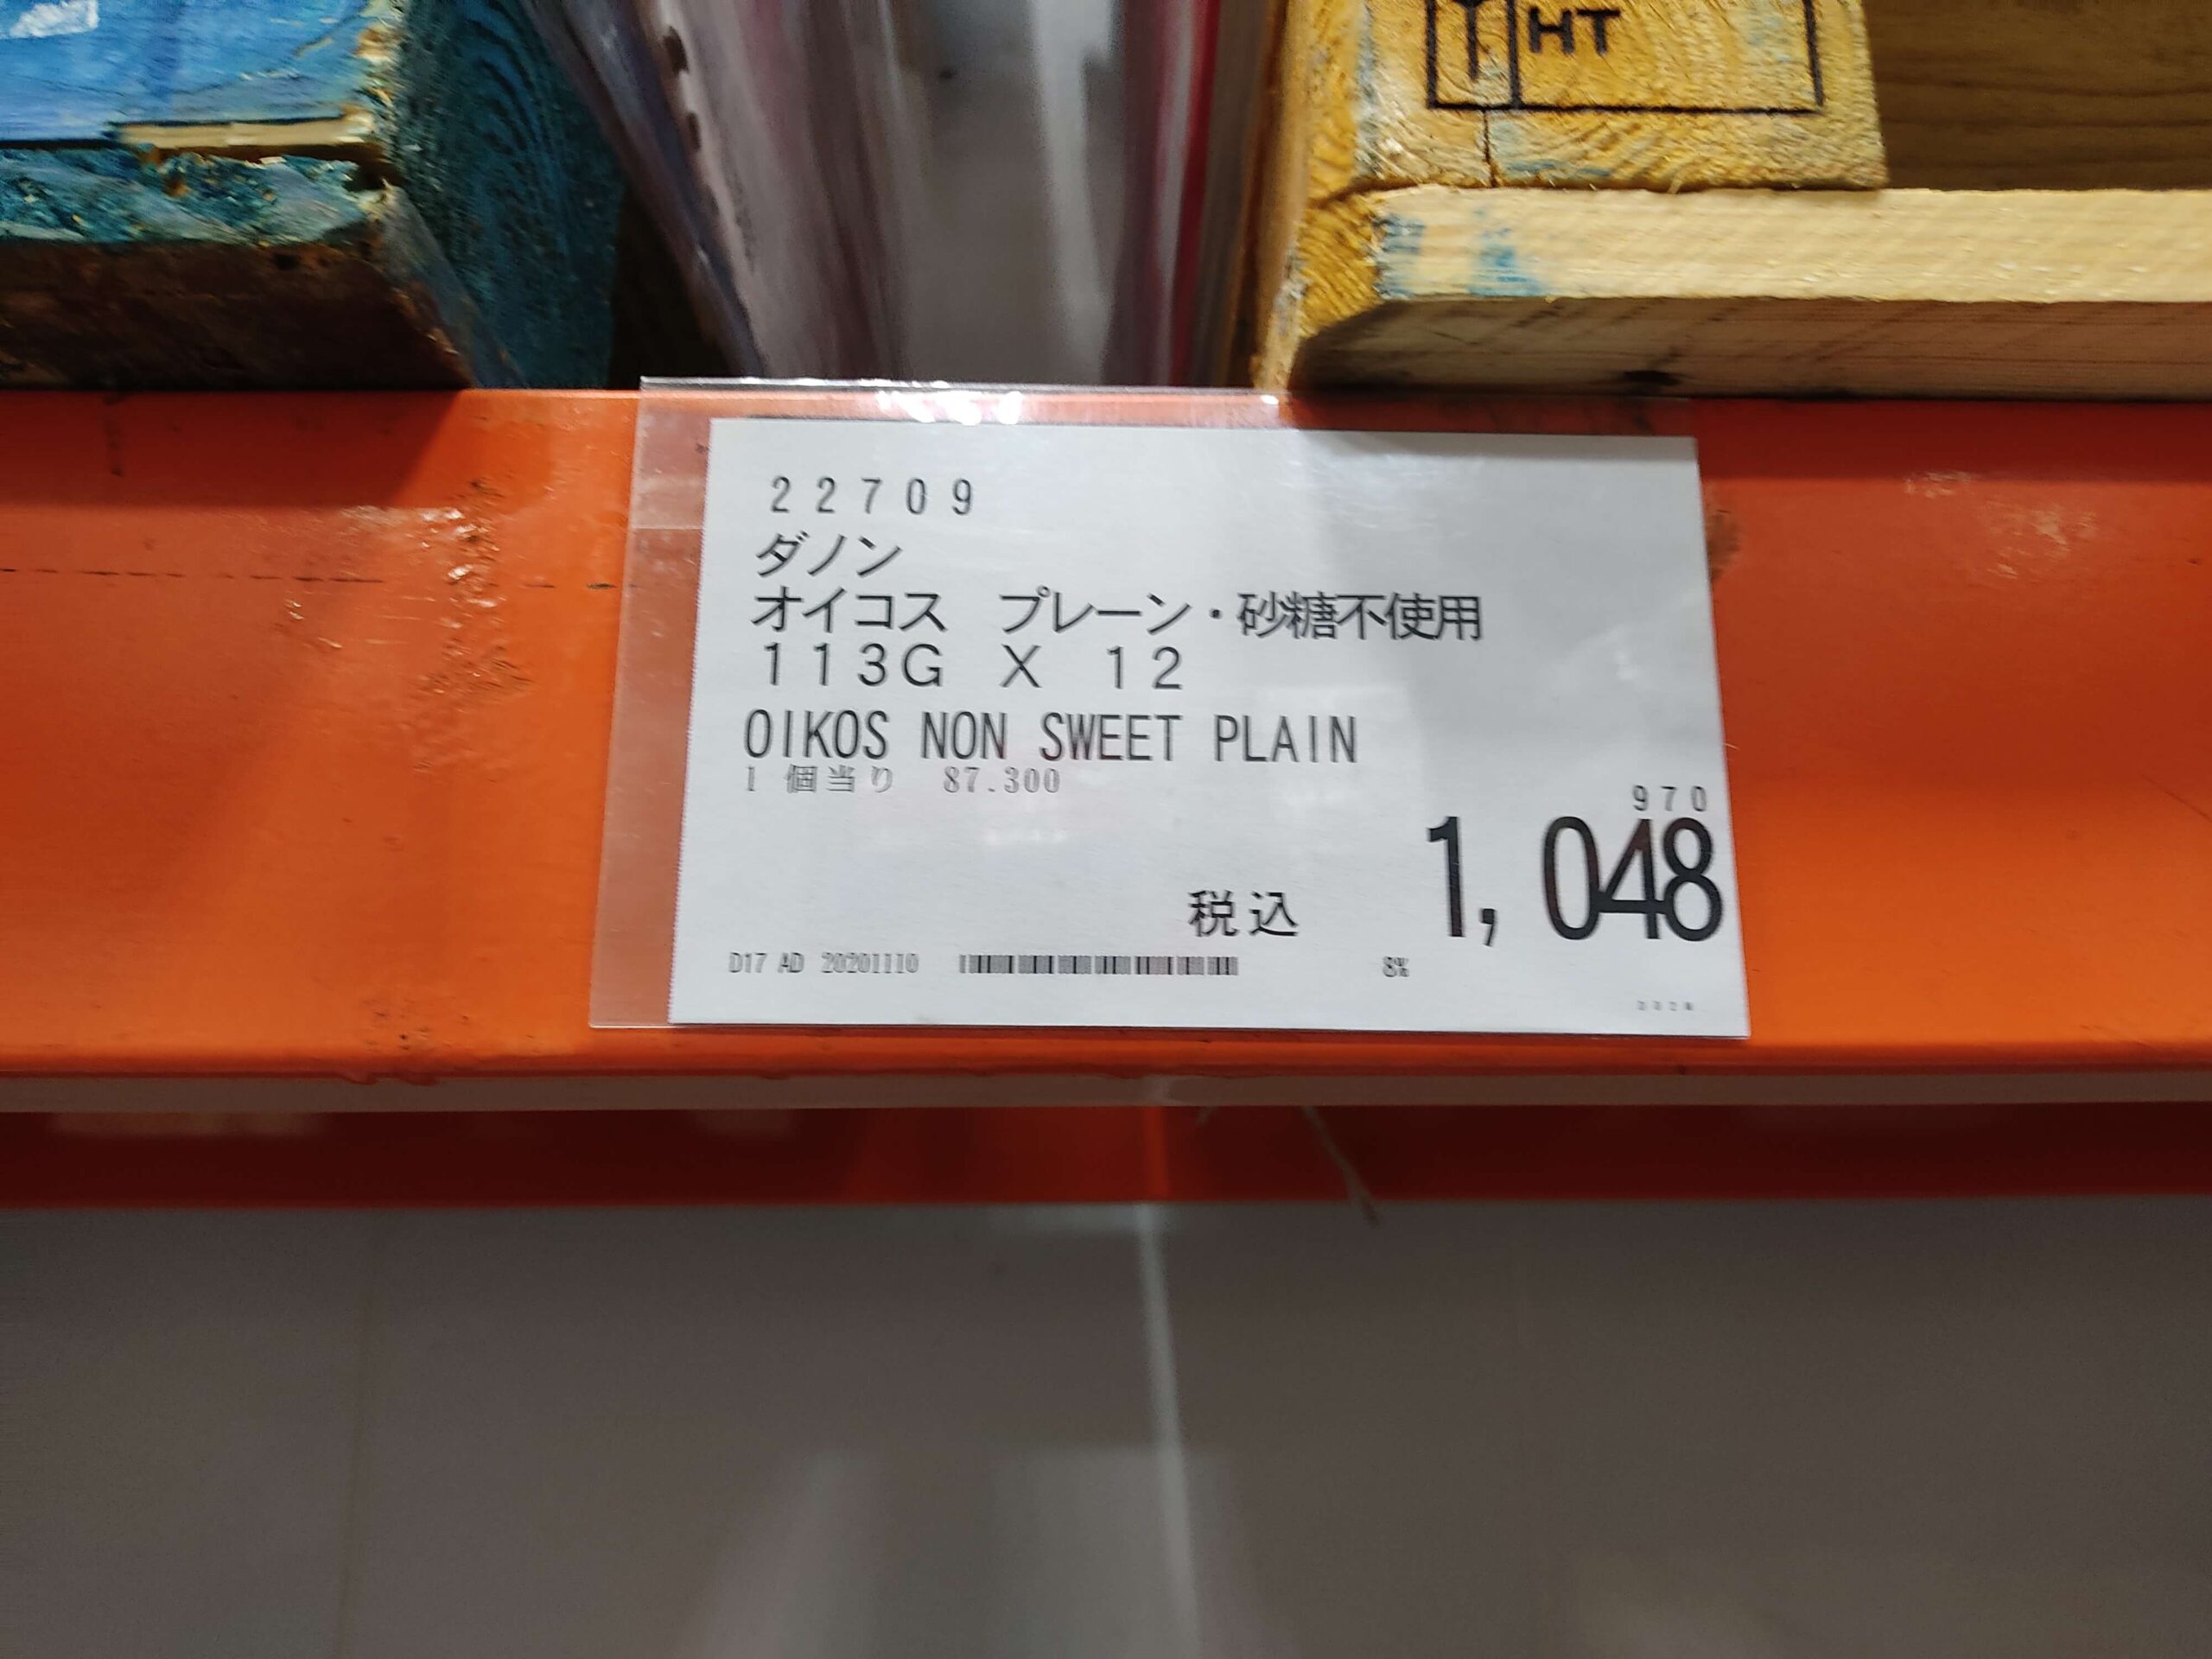 コストコで買ったオイコスのプレーン味の価格表示の写真